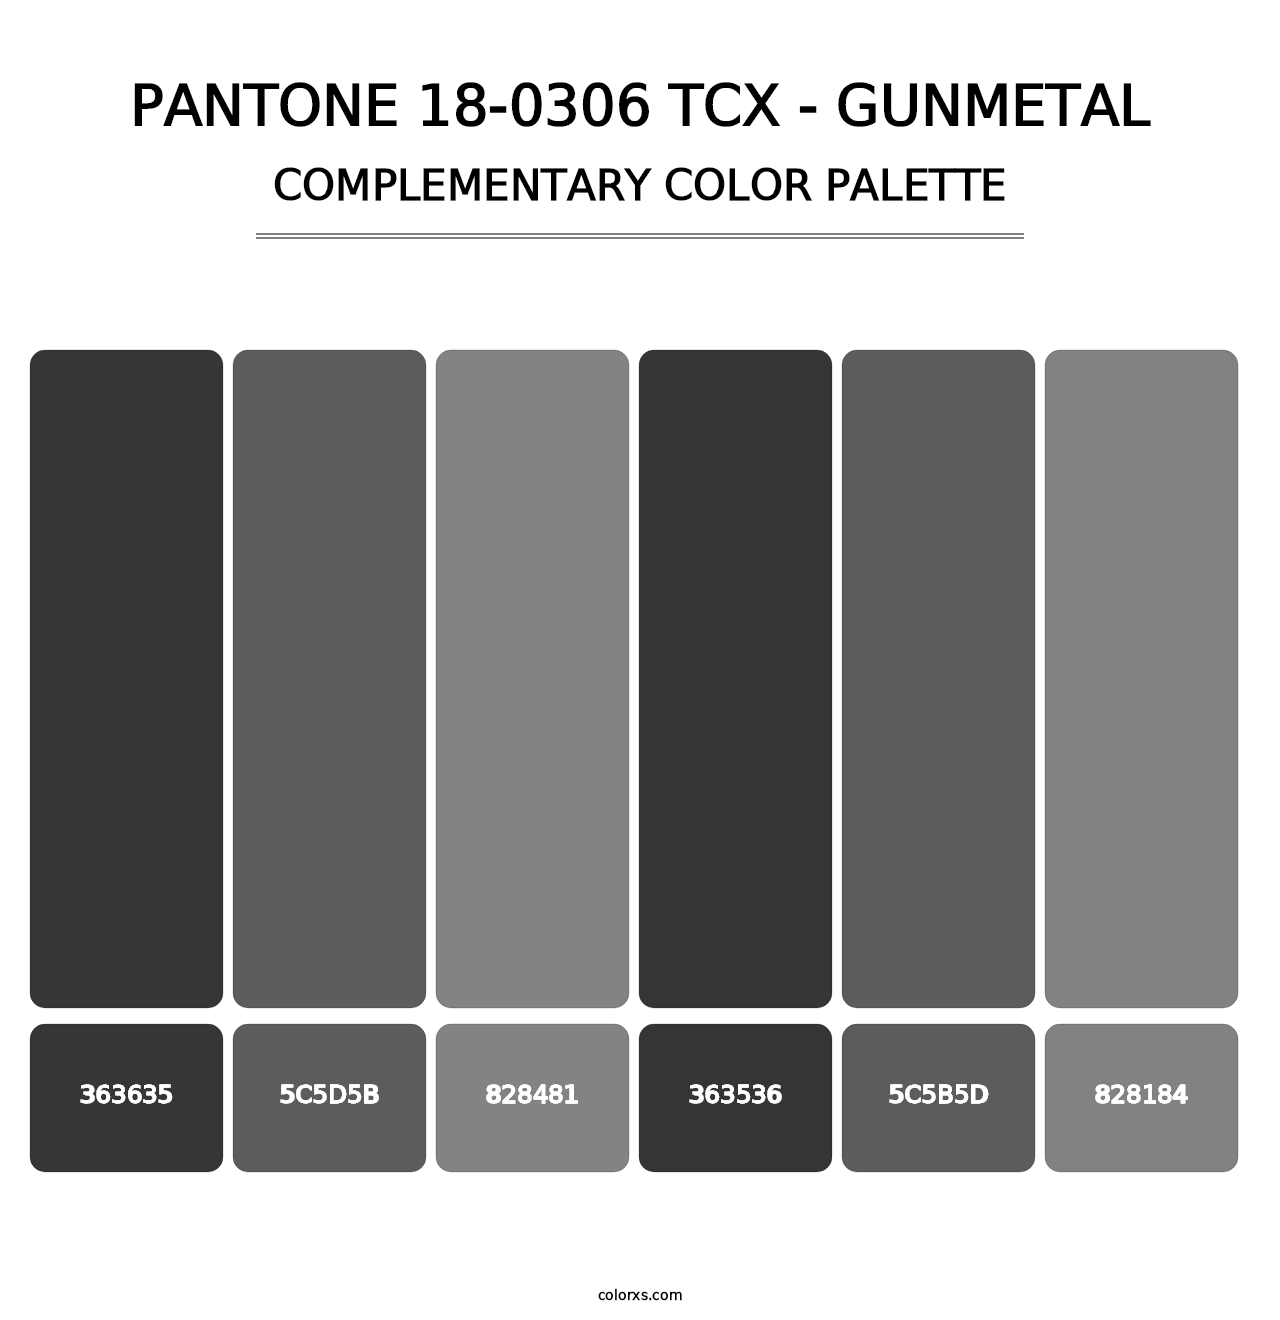 PANTONE 18-0306 TCX - Gunmetal - Complementary Color Palette